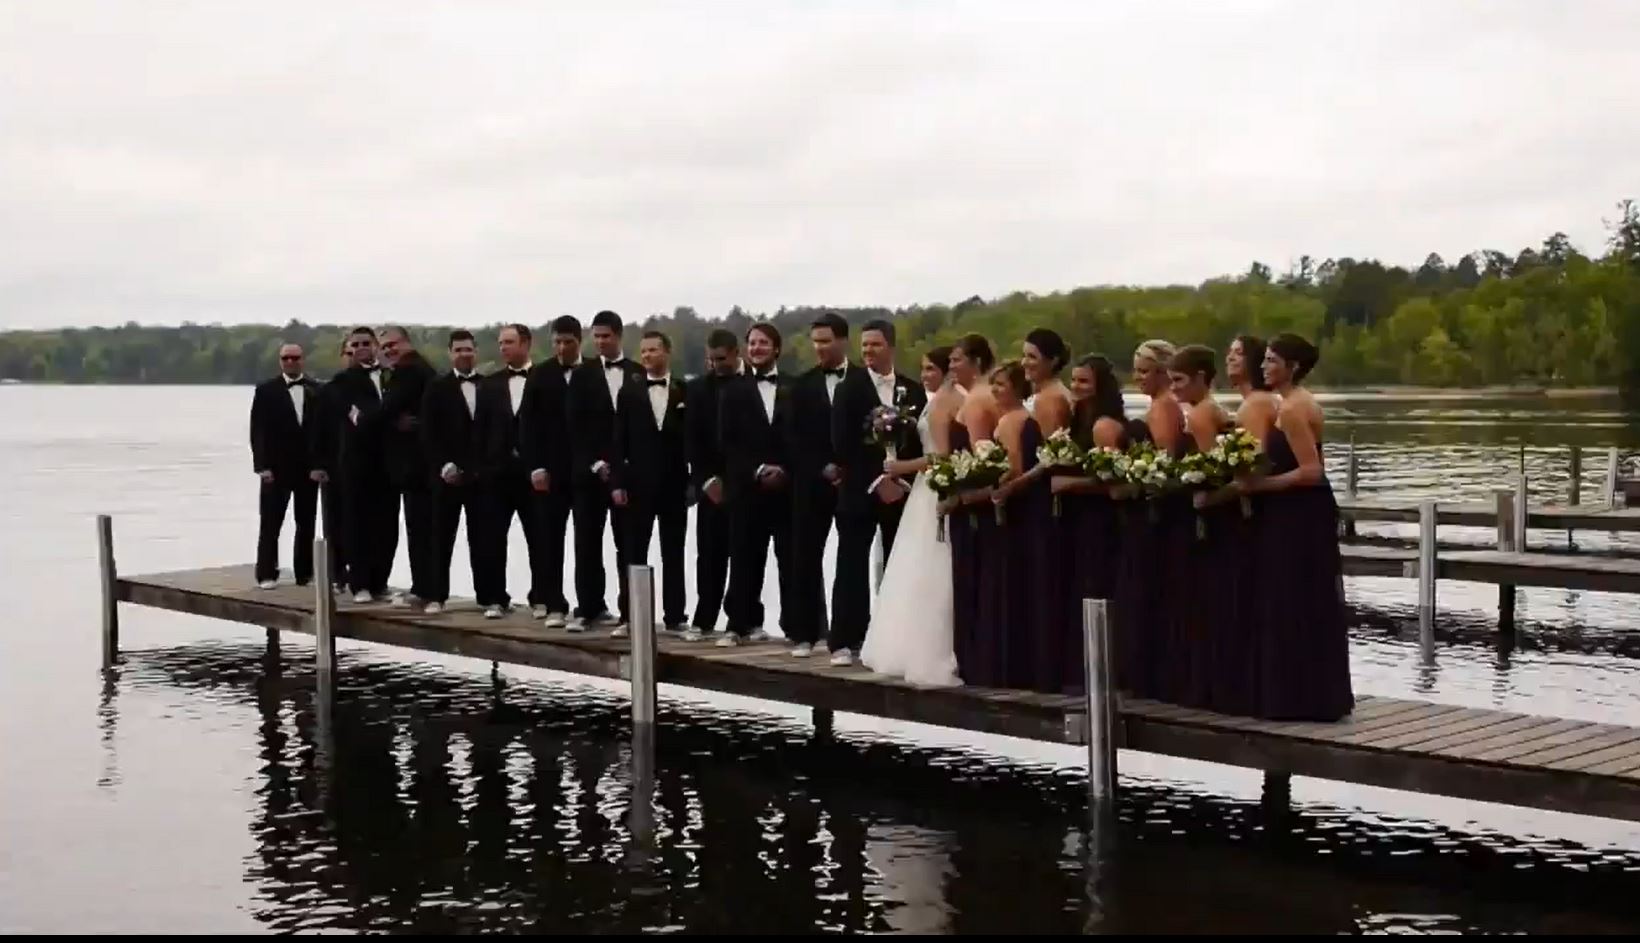 Réunir tous ses amis, le jour de son mariage, avec en arrière-plan un magnifique lac. L'idée paraissait bonne.